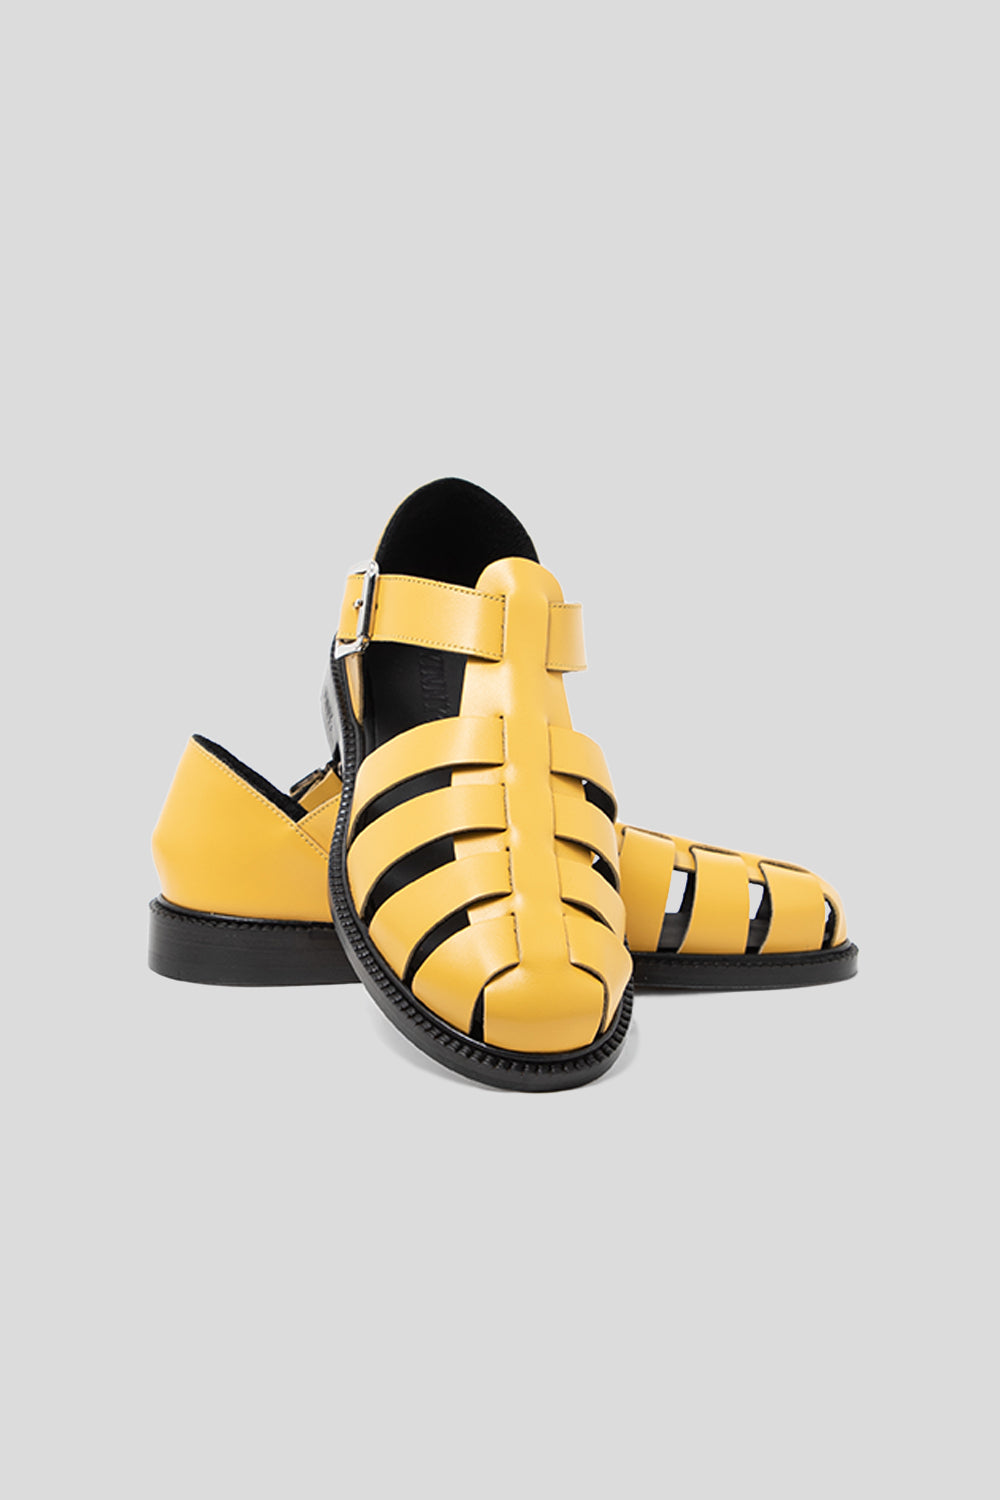 Women's Fisherman Sandals - Yellow Crust